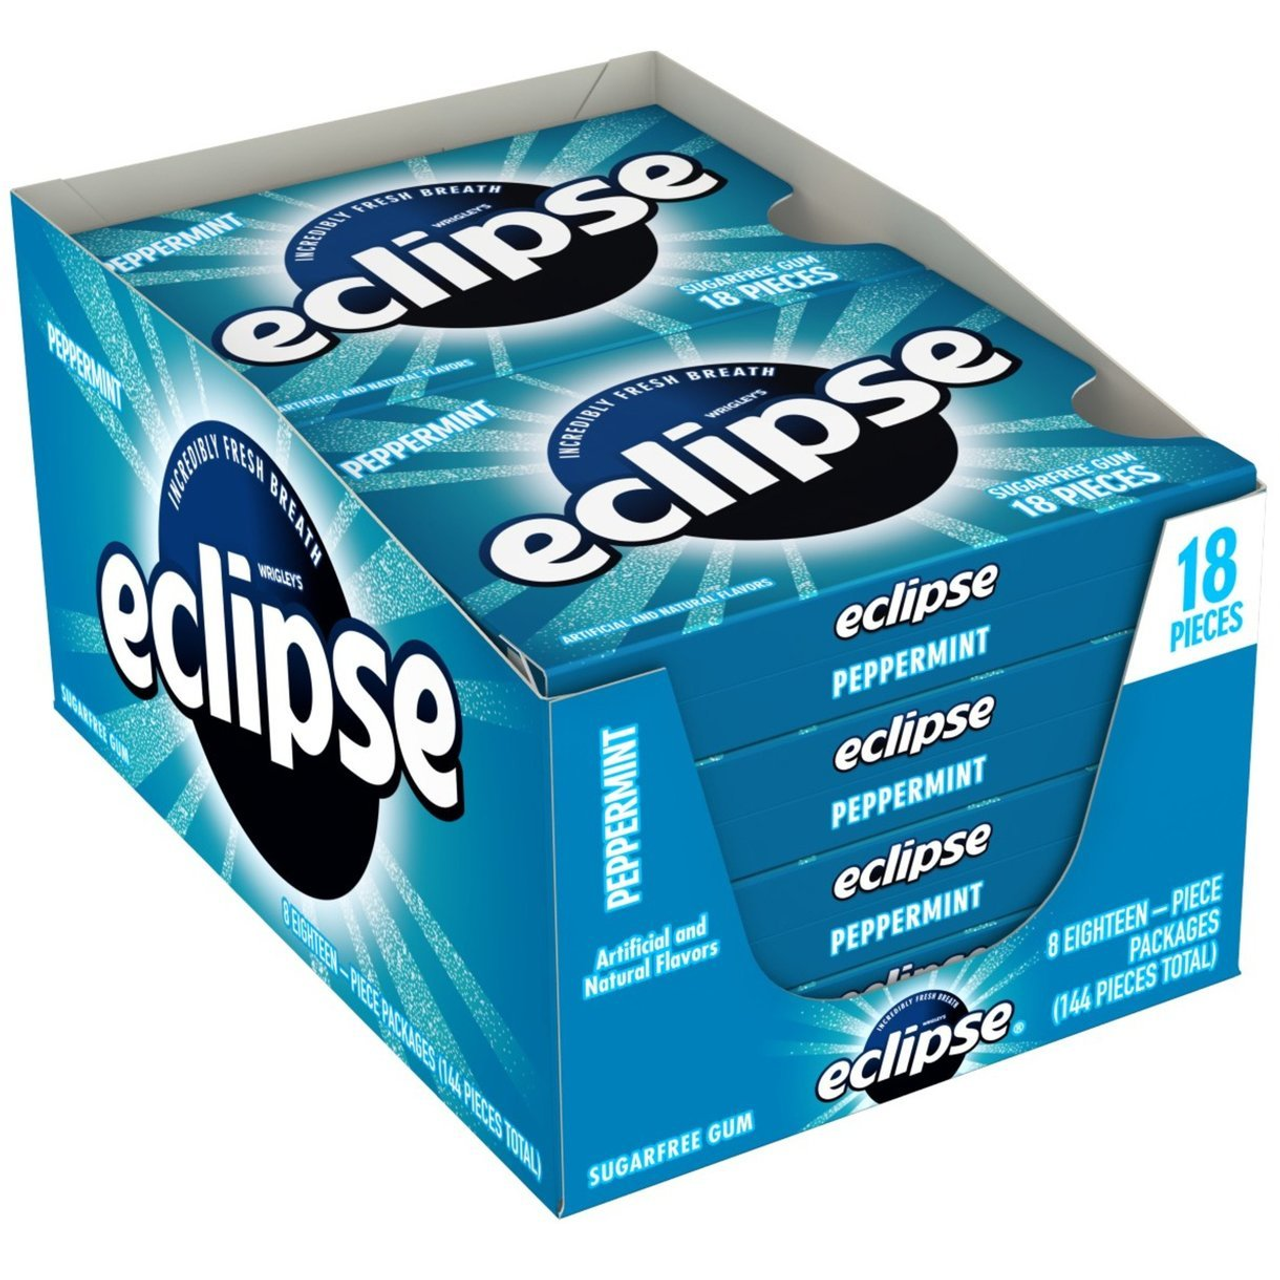 Eclipse Polar Ice 8 Count Gum